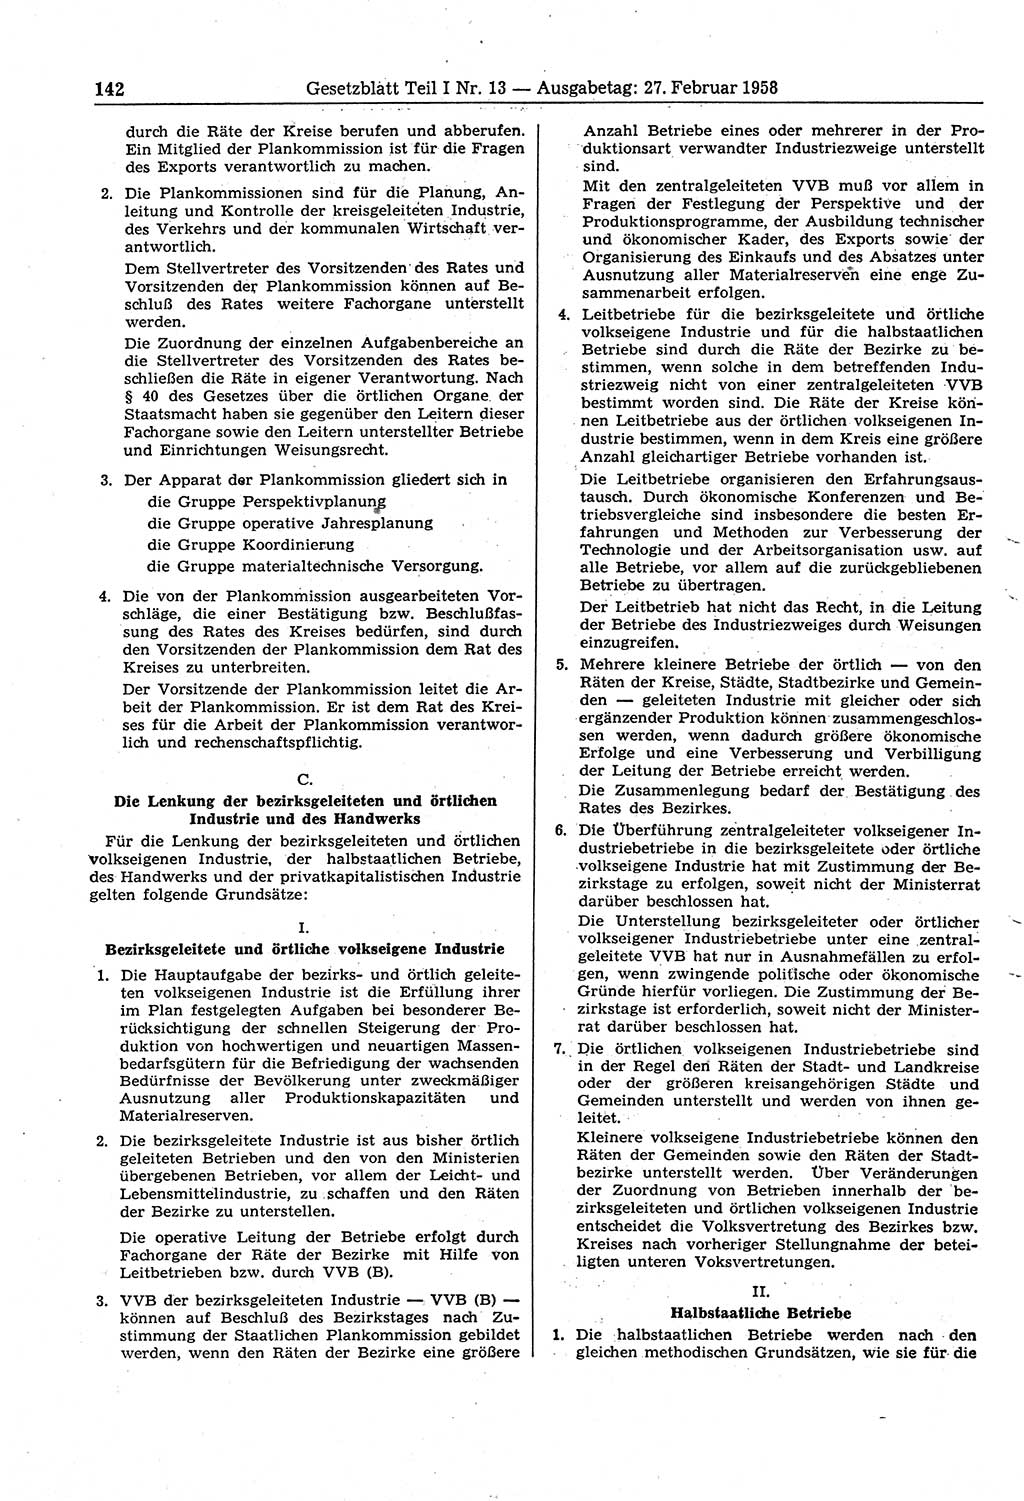 Gesetzblatt (GBl.) der Deutschen Demokratischen Republik (DDR) Teil Ⅰ 1958, Seite 142 (GBl. DDR Ⅰ 1958, S. 142)